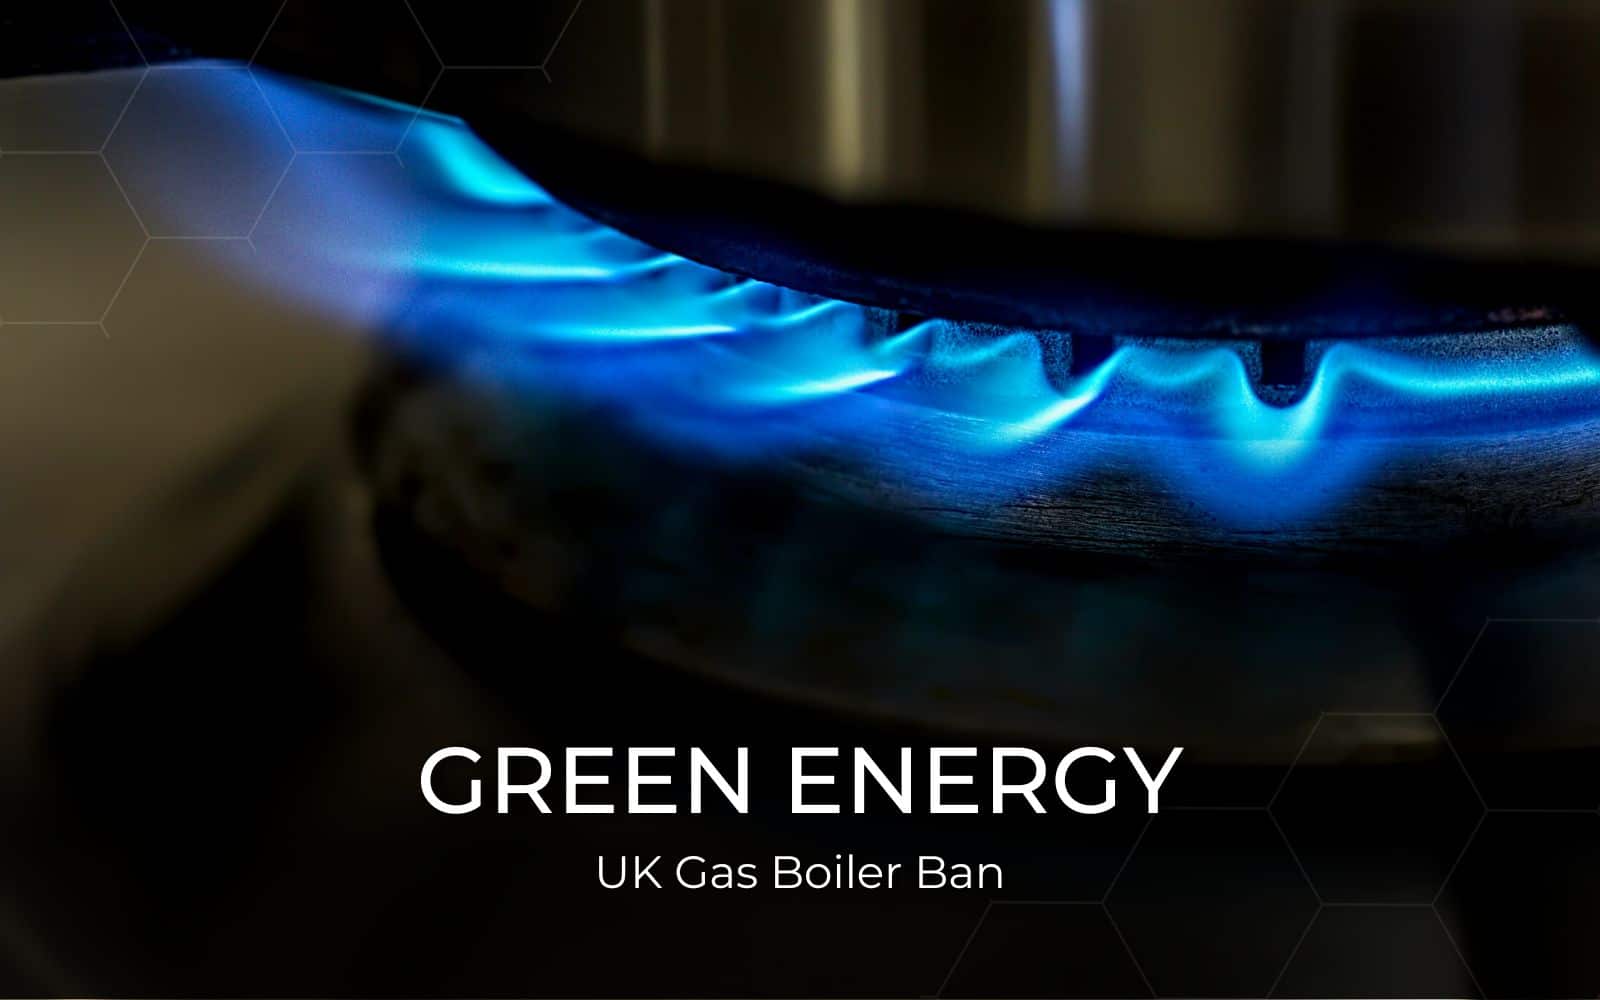 UK Gas Boiler Ban